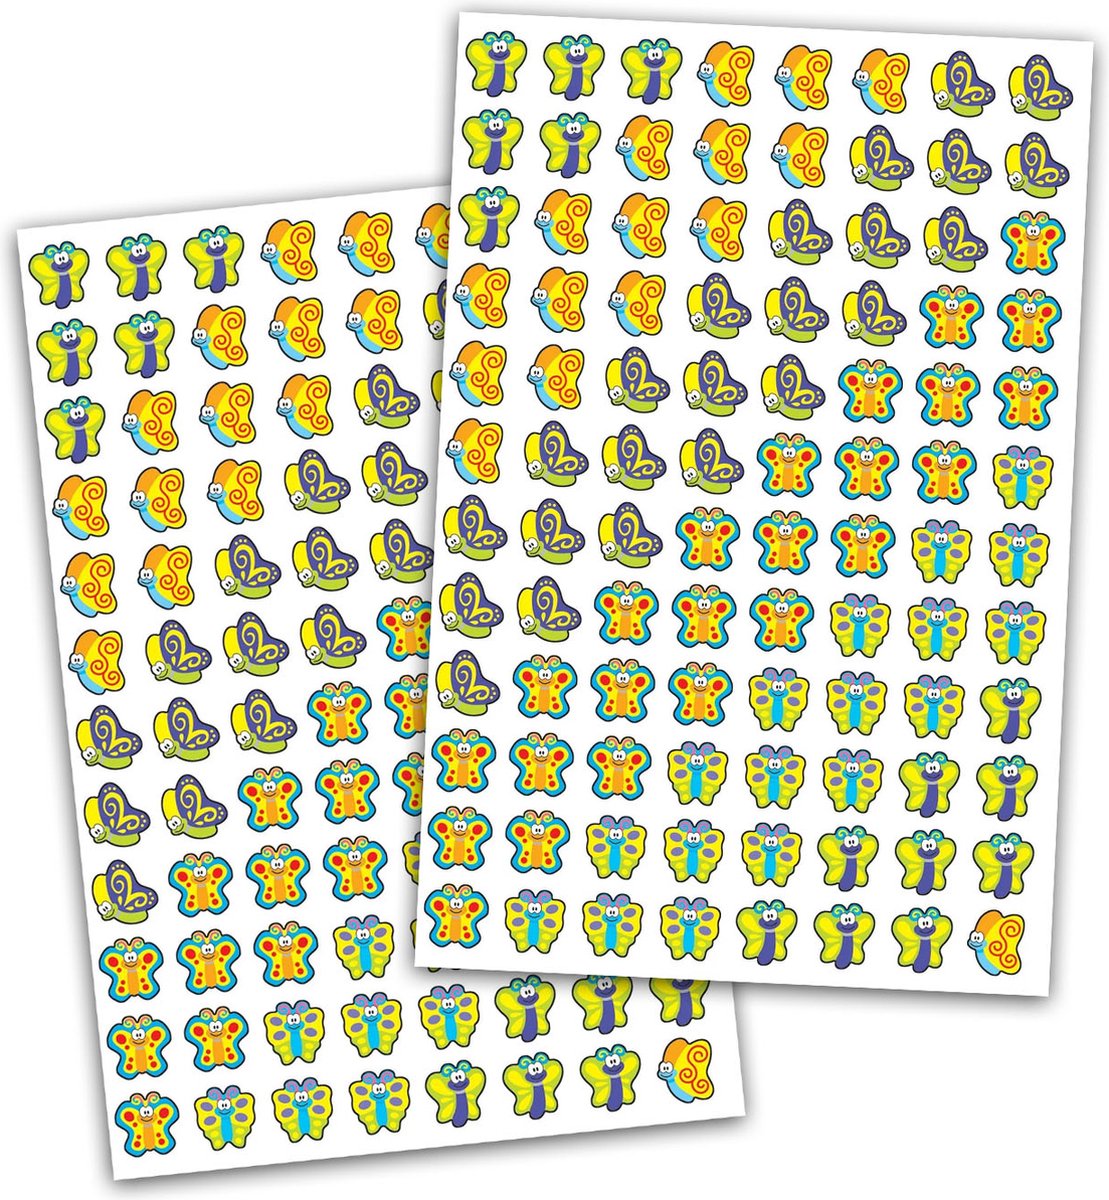 Vlinder Stickervellen - Stickers Vlinders - Vlinder Decoratie - Lente Stickers - Zomer Stickers - Knutselen Meisjes - Knutselen Volwassenen - Kaarten Maken - Stickervellen Meisjes - Stickervellen Vlinders - Beloningsstickers - Stickers Kinderen